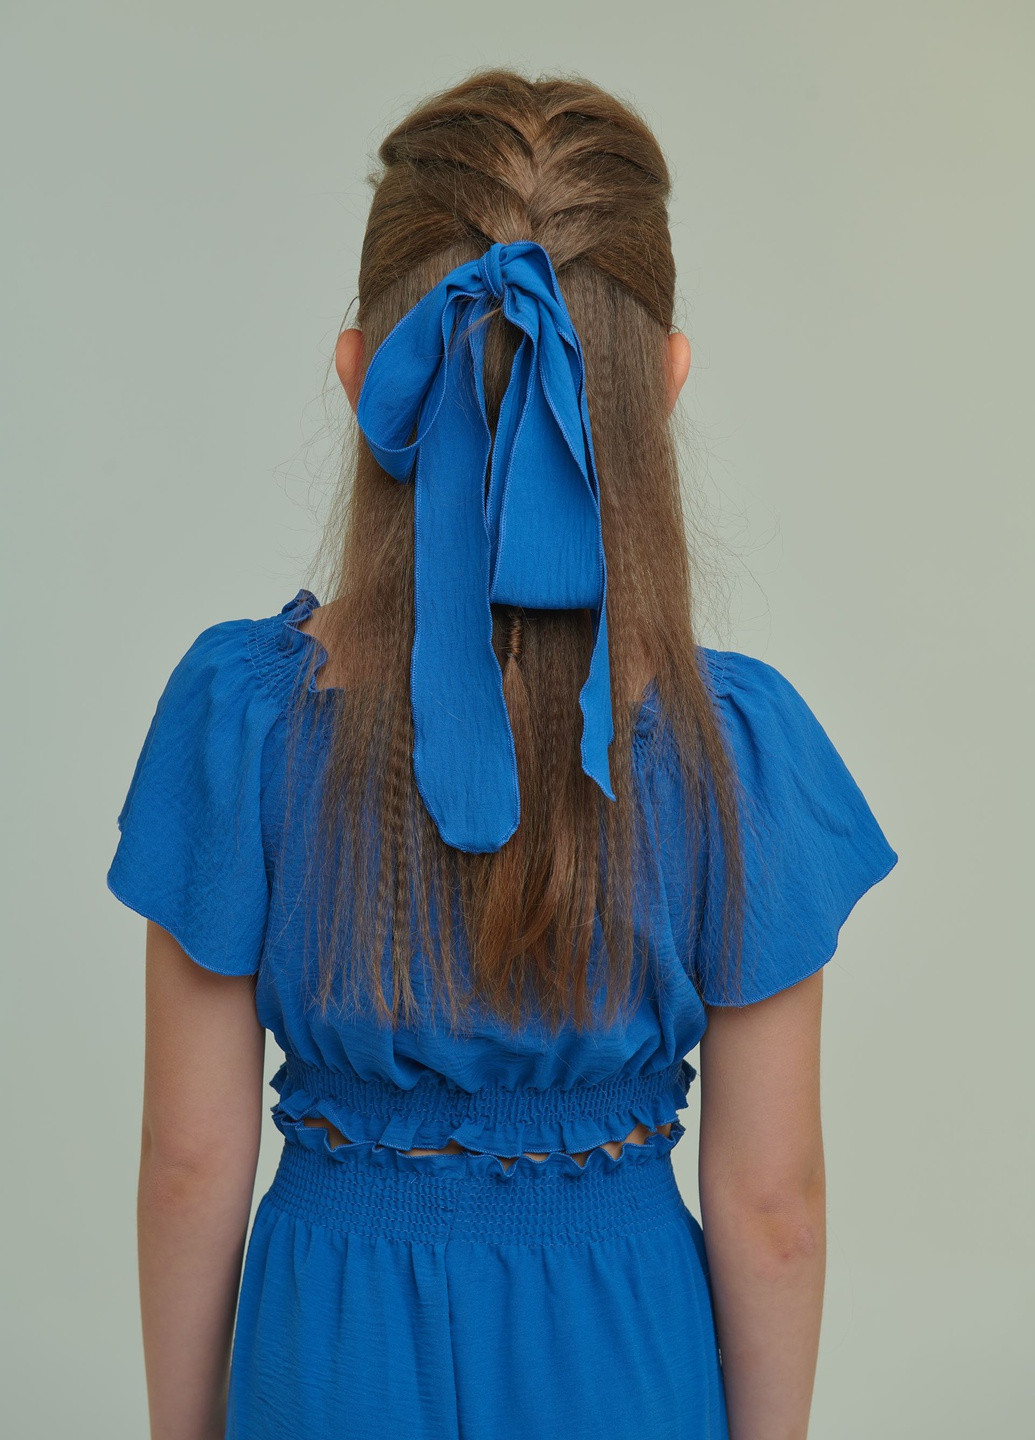 Синій літній брючний костюм (топ+штани) для дівчинки синій брючний Yumster